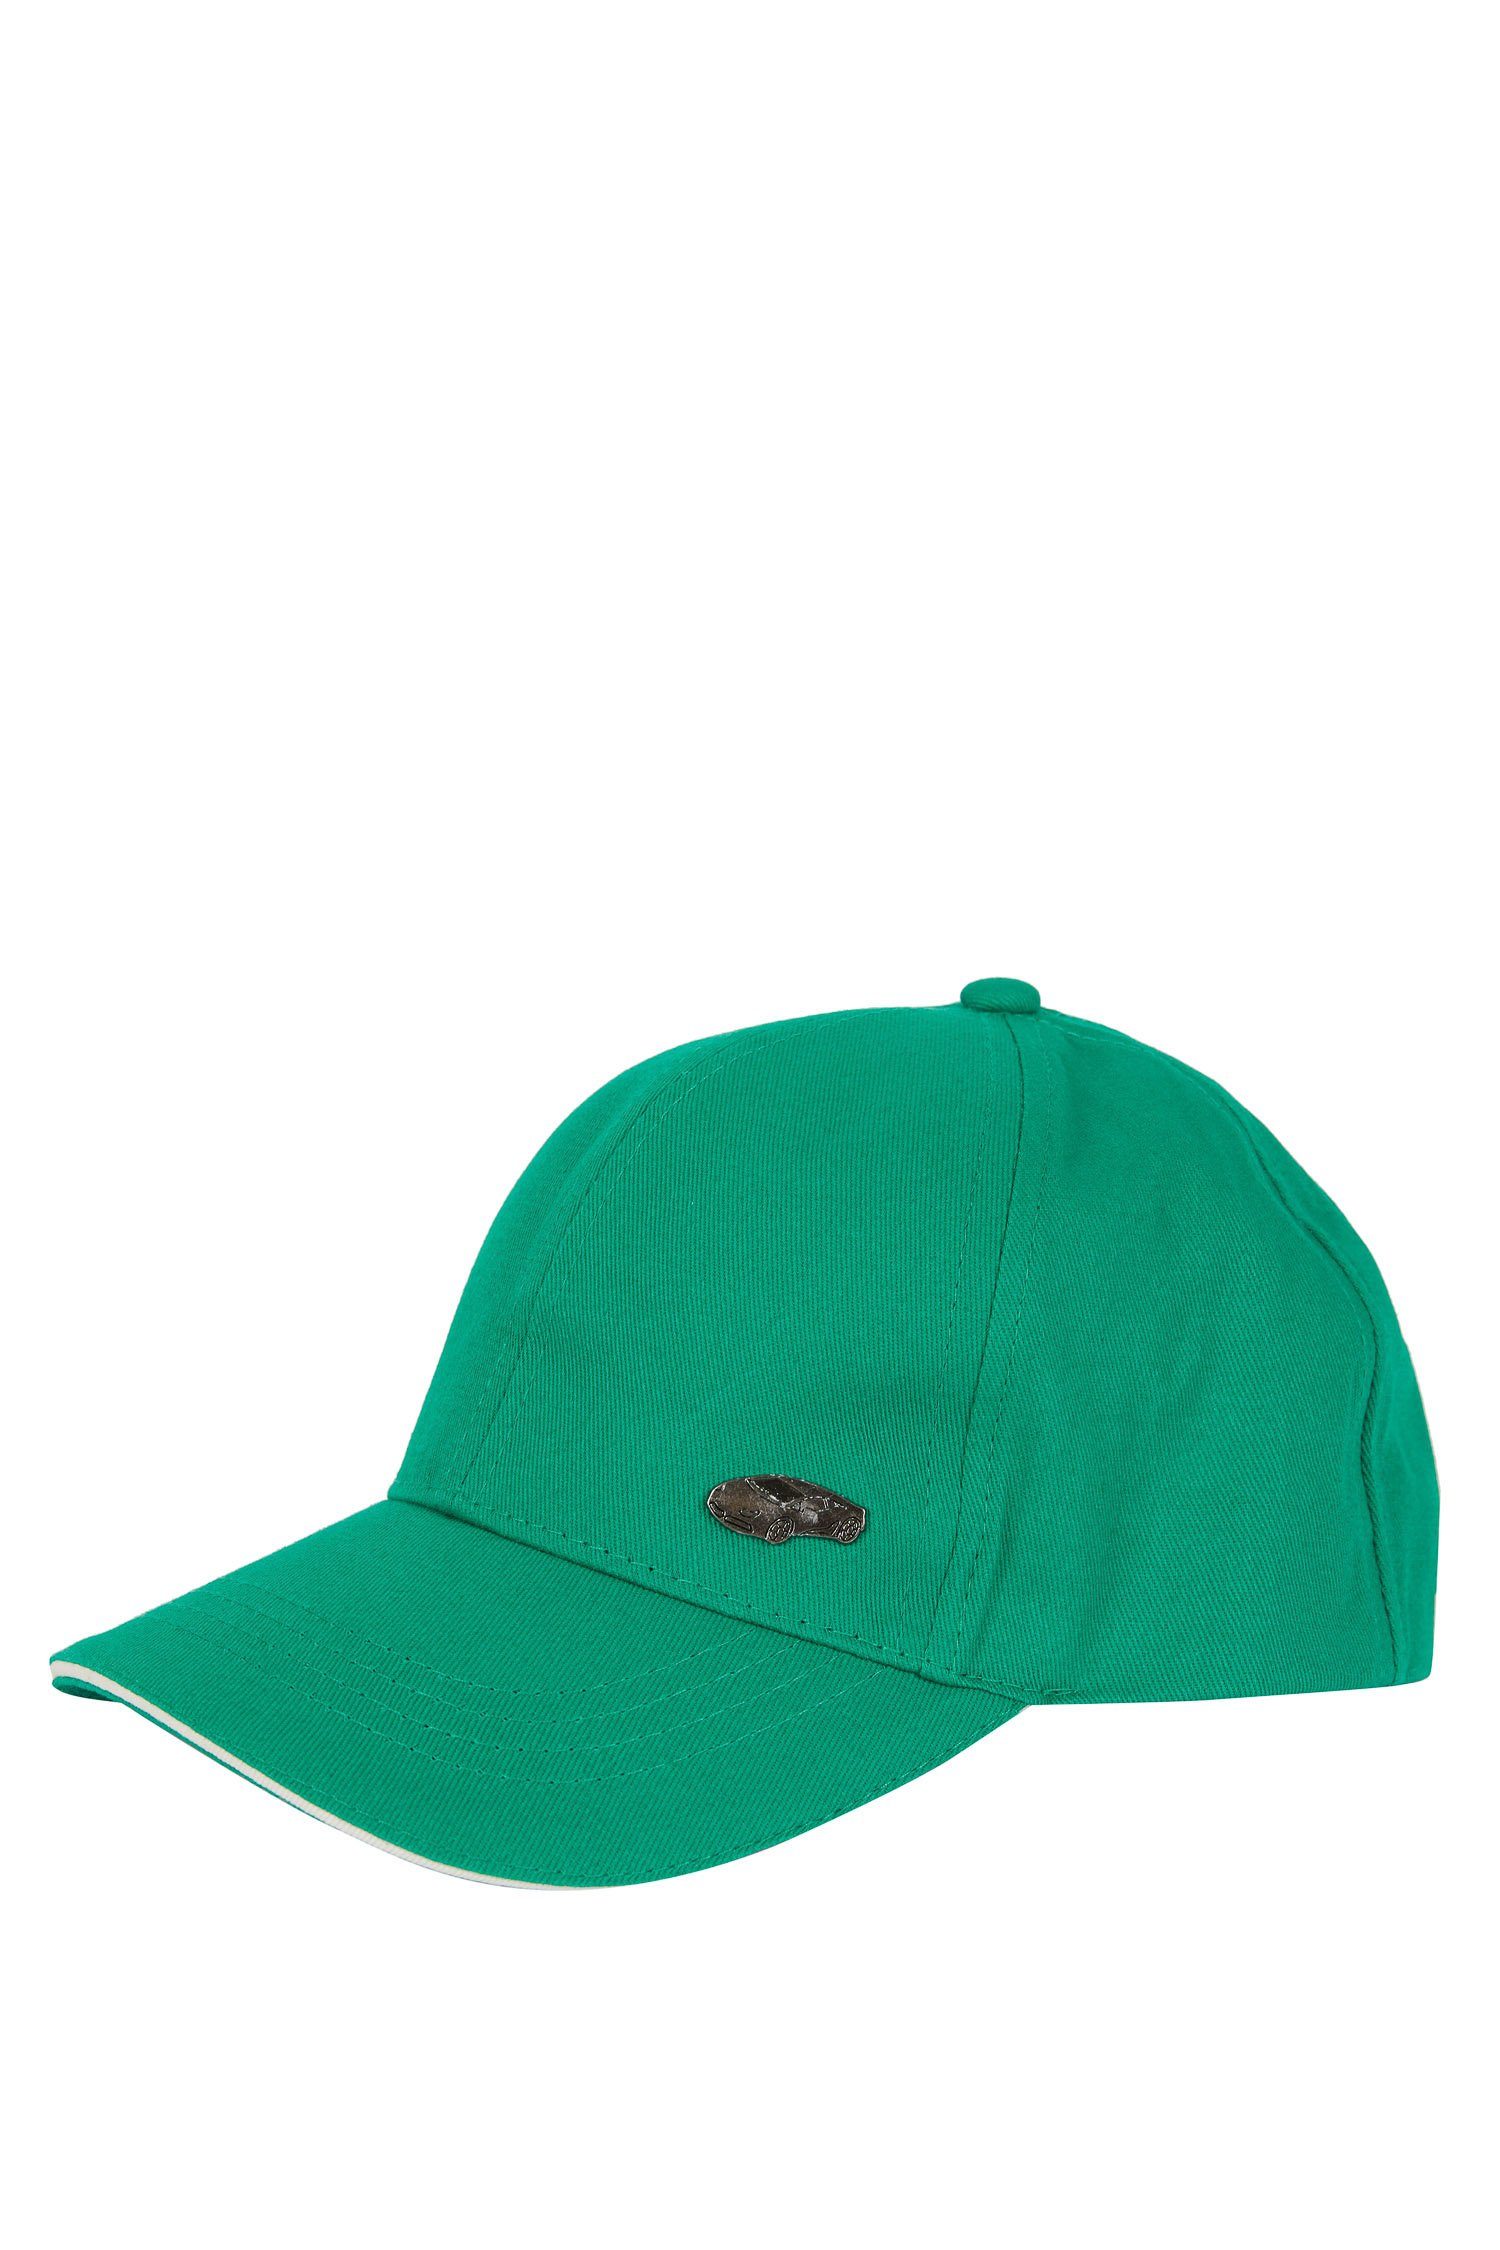 Jungen DeFacto Snapback Grün Cap Cap